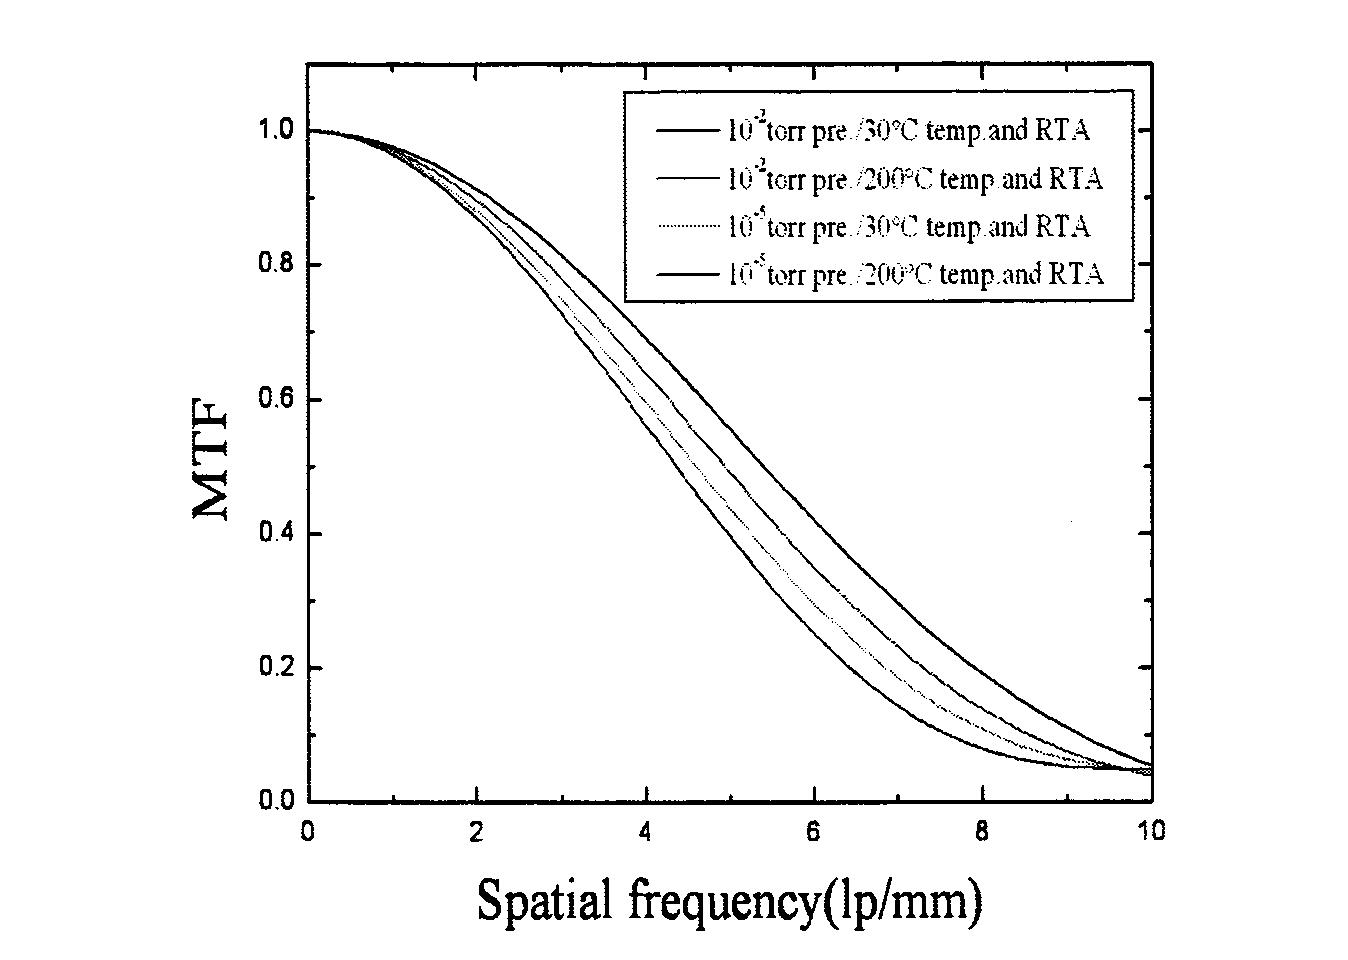 다양한 공정조건의 CsI(Tl) 섬광체의 공간분해능 측정